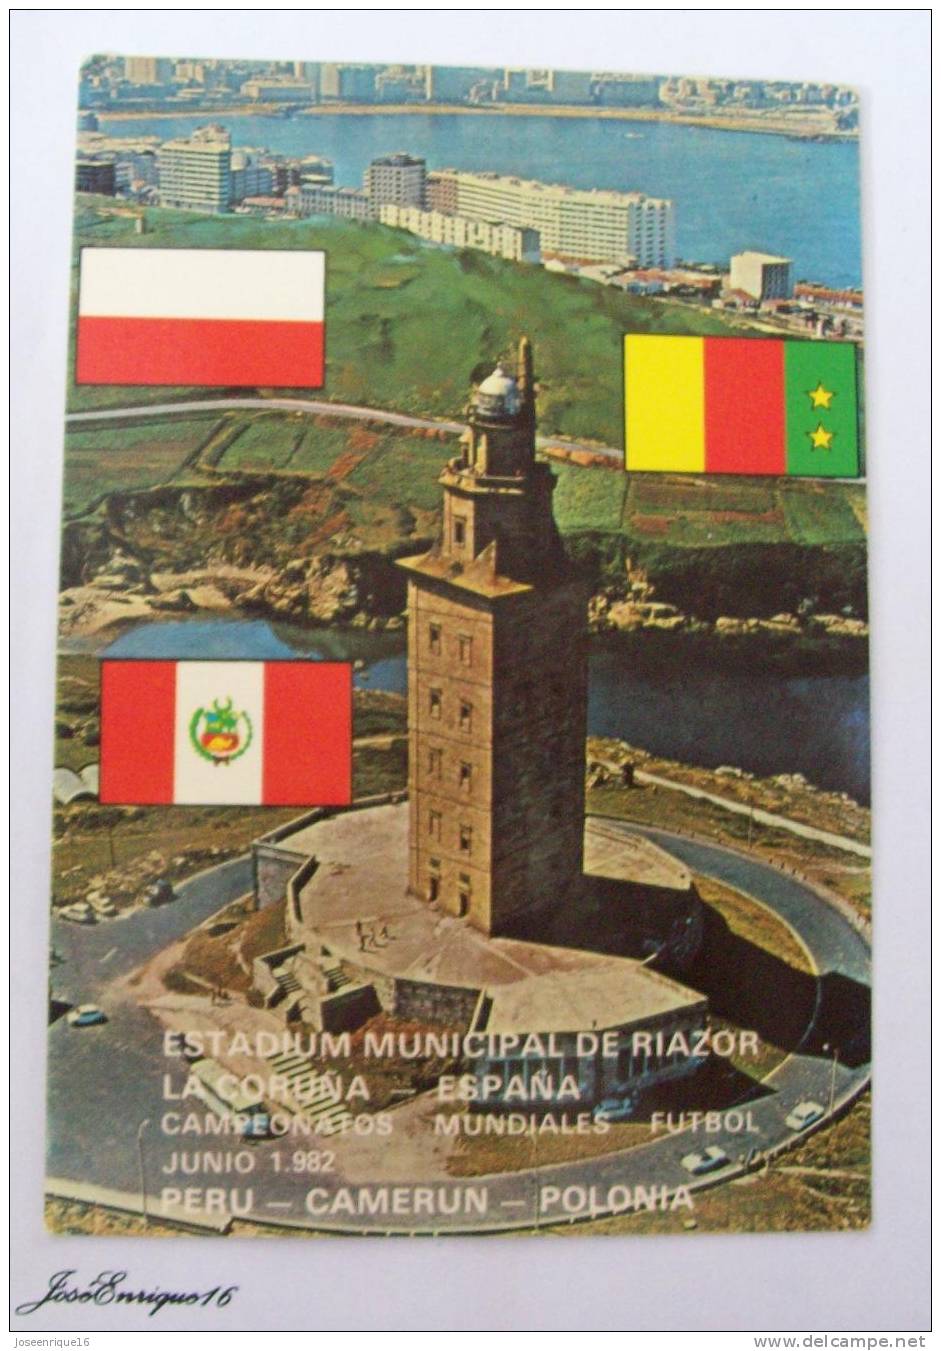 ESTADIUM MUNICIPAL DE RIAZOR. LA CORUÑA. CAMPEONATOS MUNDIALES FUTBOL 1982. PERU, CAMERUN, POLONIA. - La Coruña